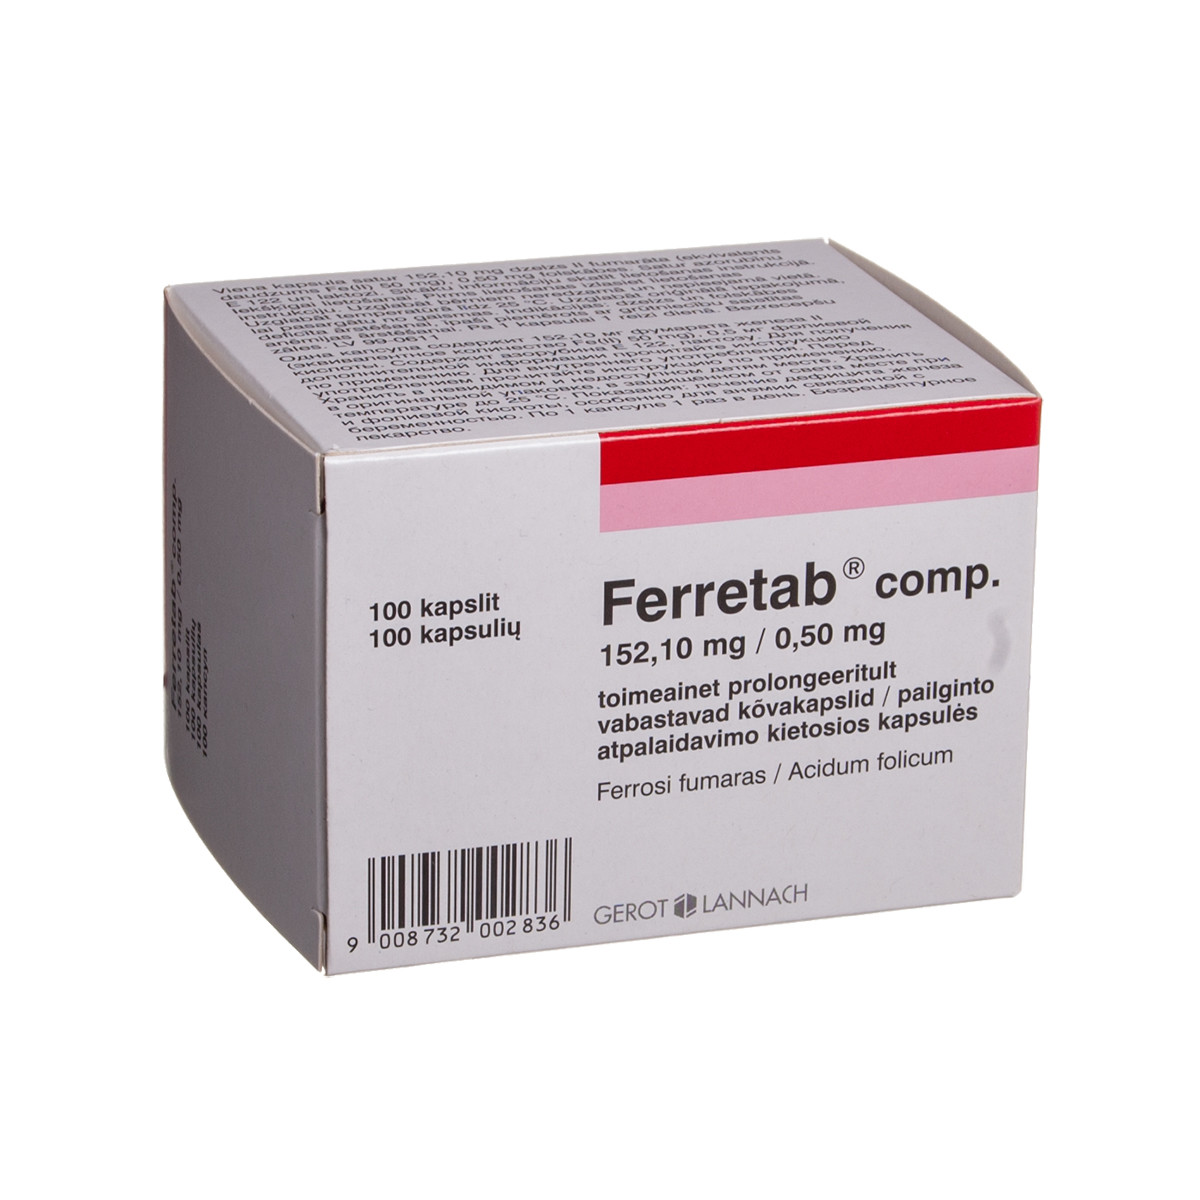 FERRETAB COMP., 152,1 mg/0,5 mg, pailginto atpalaidavimo kietosios kapsulės, N100